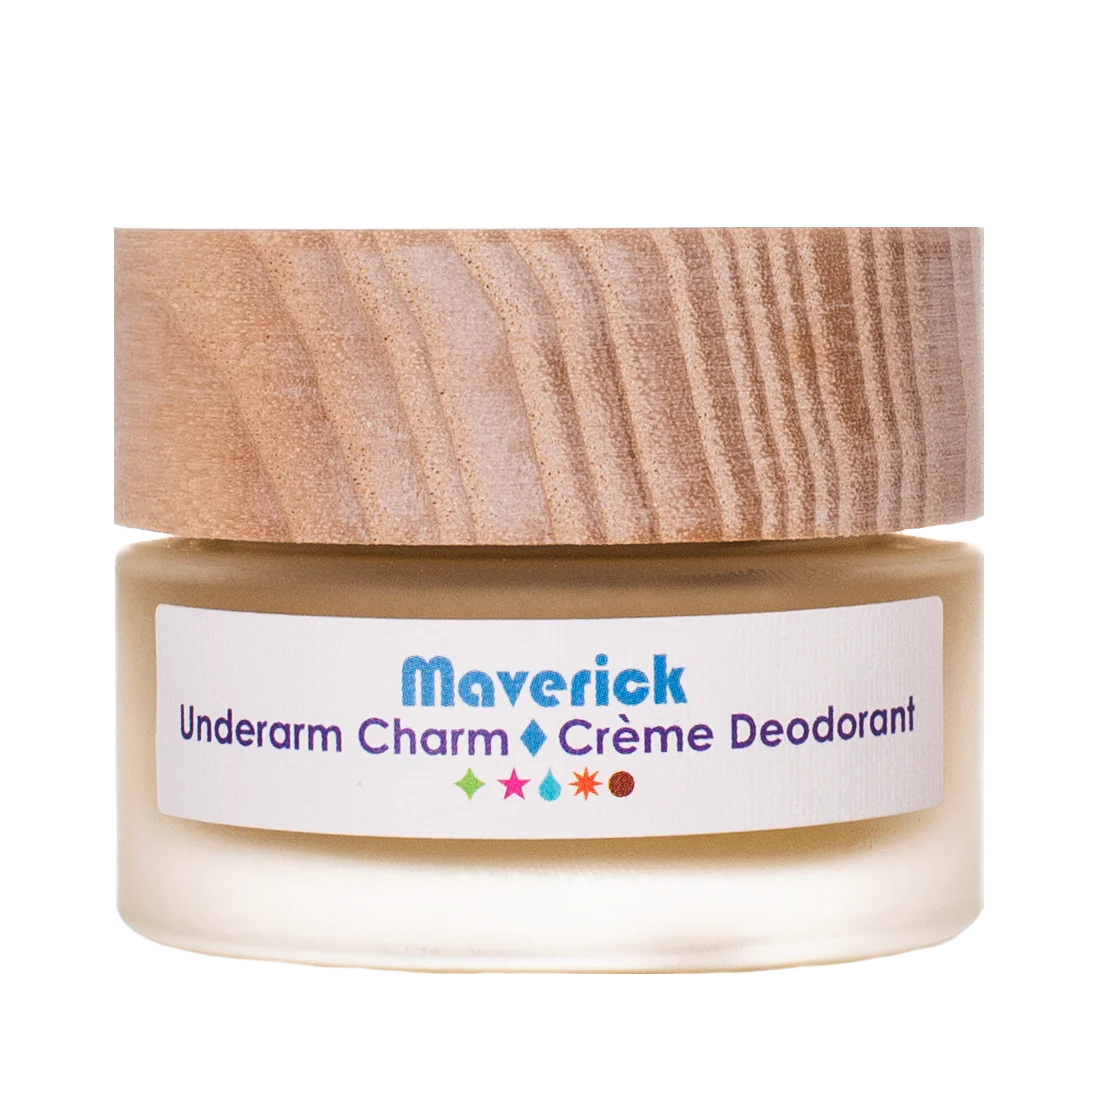 Living Libations - Maverick Underarm Charm Crème Deodorant (6ml, 30ml)